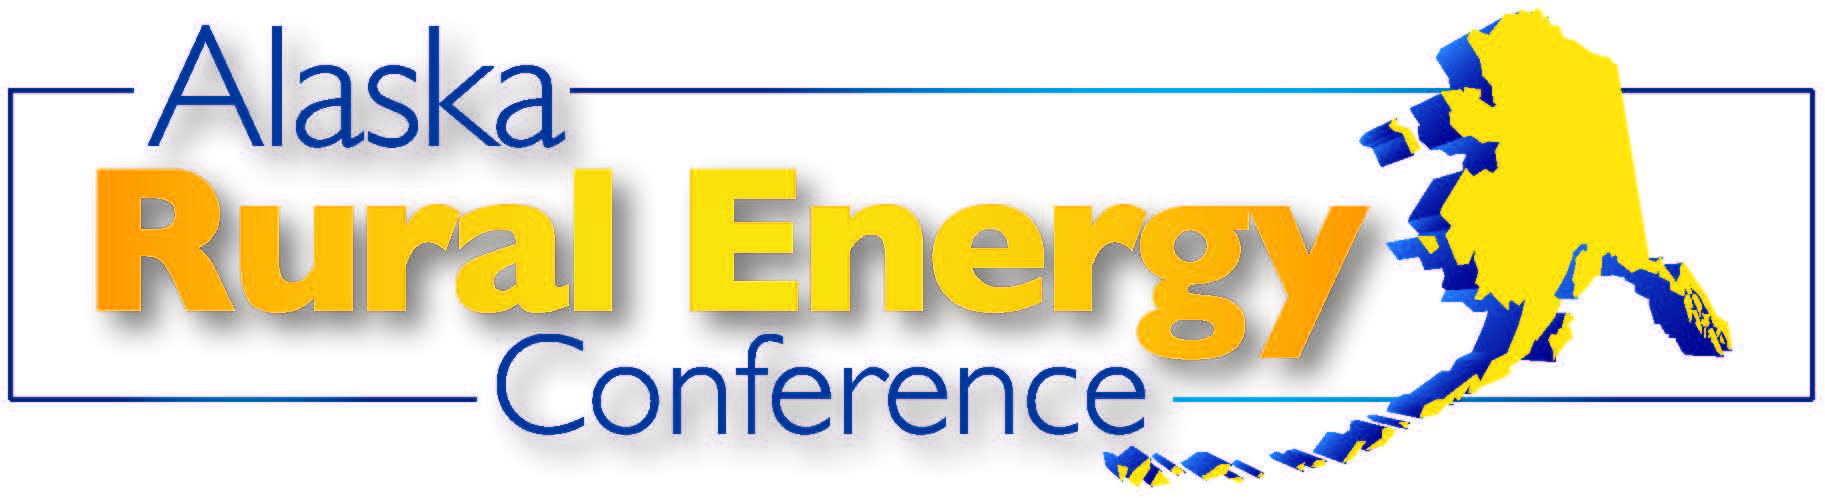 Alaska Rural Energy Conference (Fairbanks) September 23rd – 25th, 2014